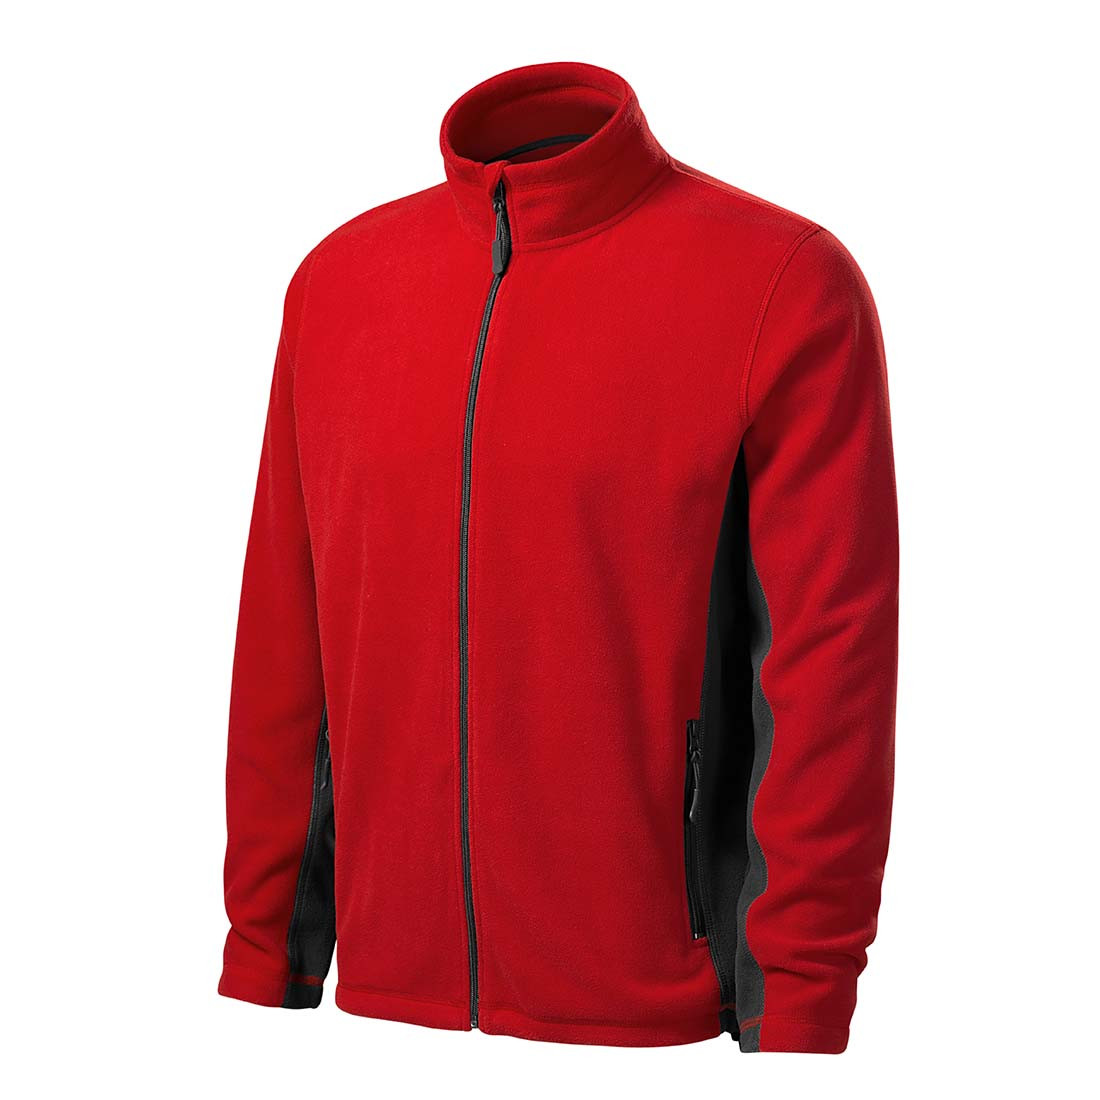 Men's Fleece Jacket - Safetywear